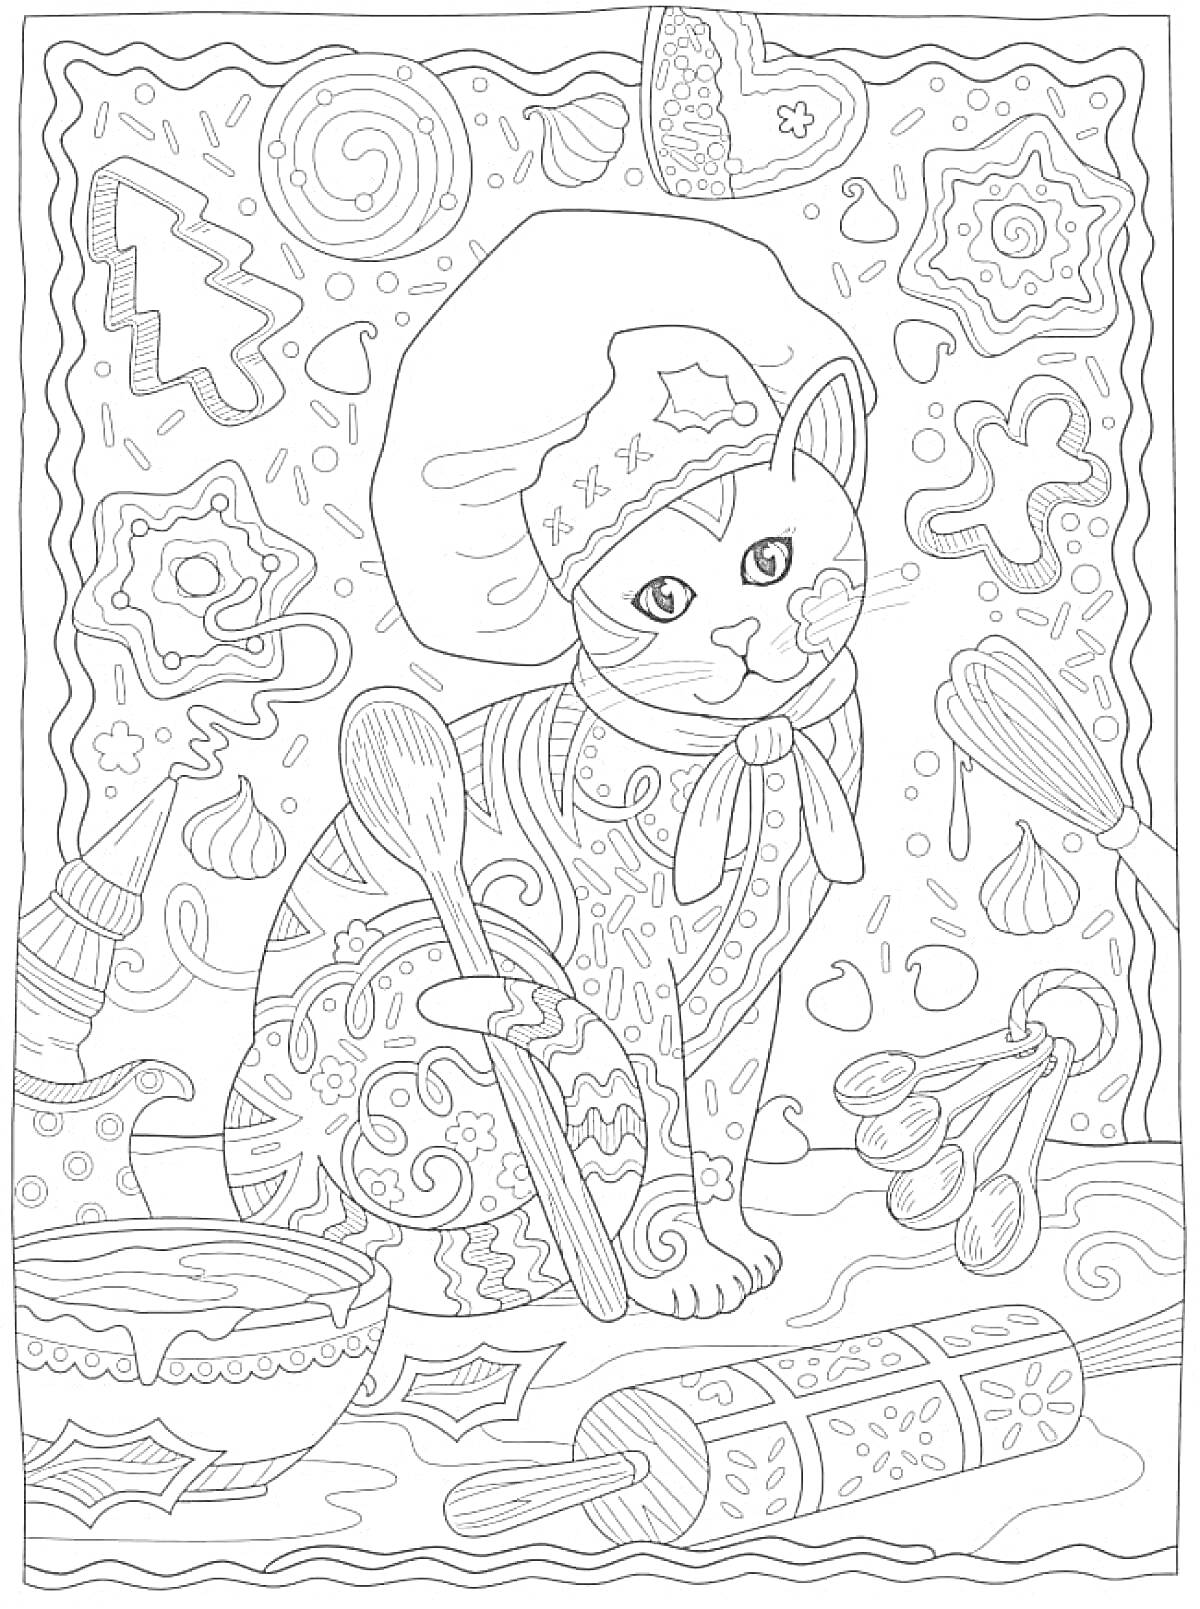 Раскраска Кошка-пекарь с венчиком, ложками, миской, качалкой, имбирными пряниками и кремом